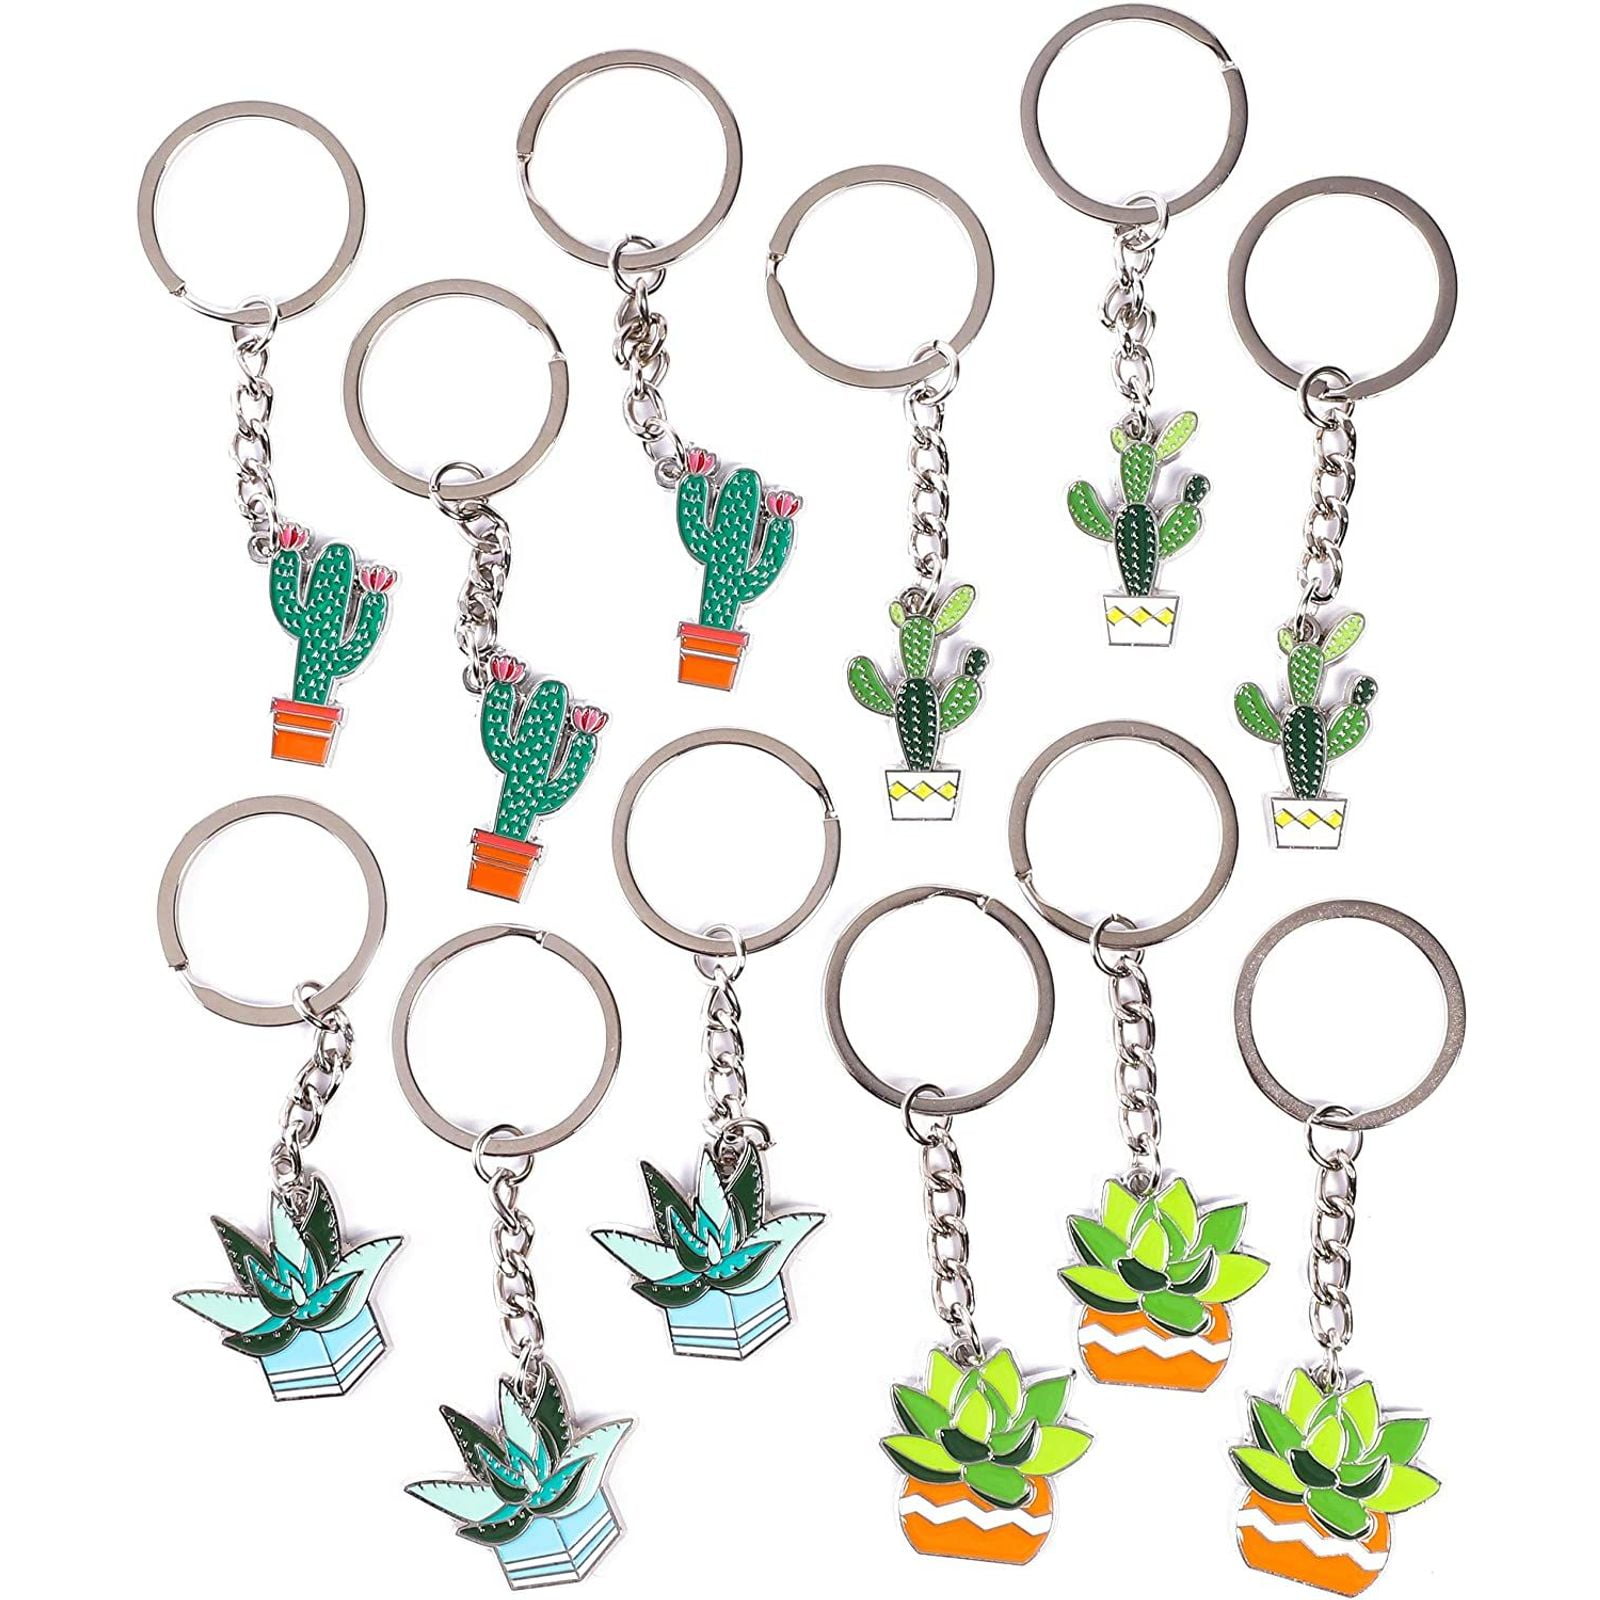 Creative LED Cactus Luminous Keychain Keyring Plastic Mini Flashlight Kids Toy